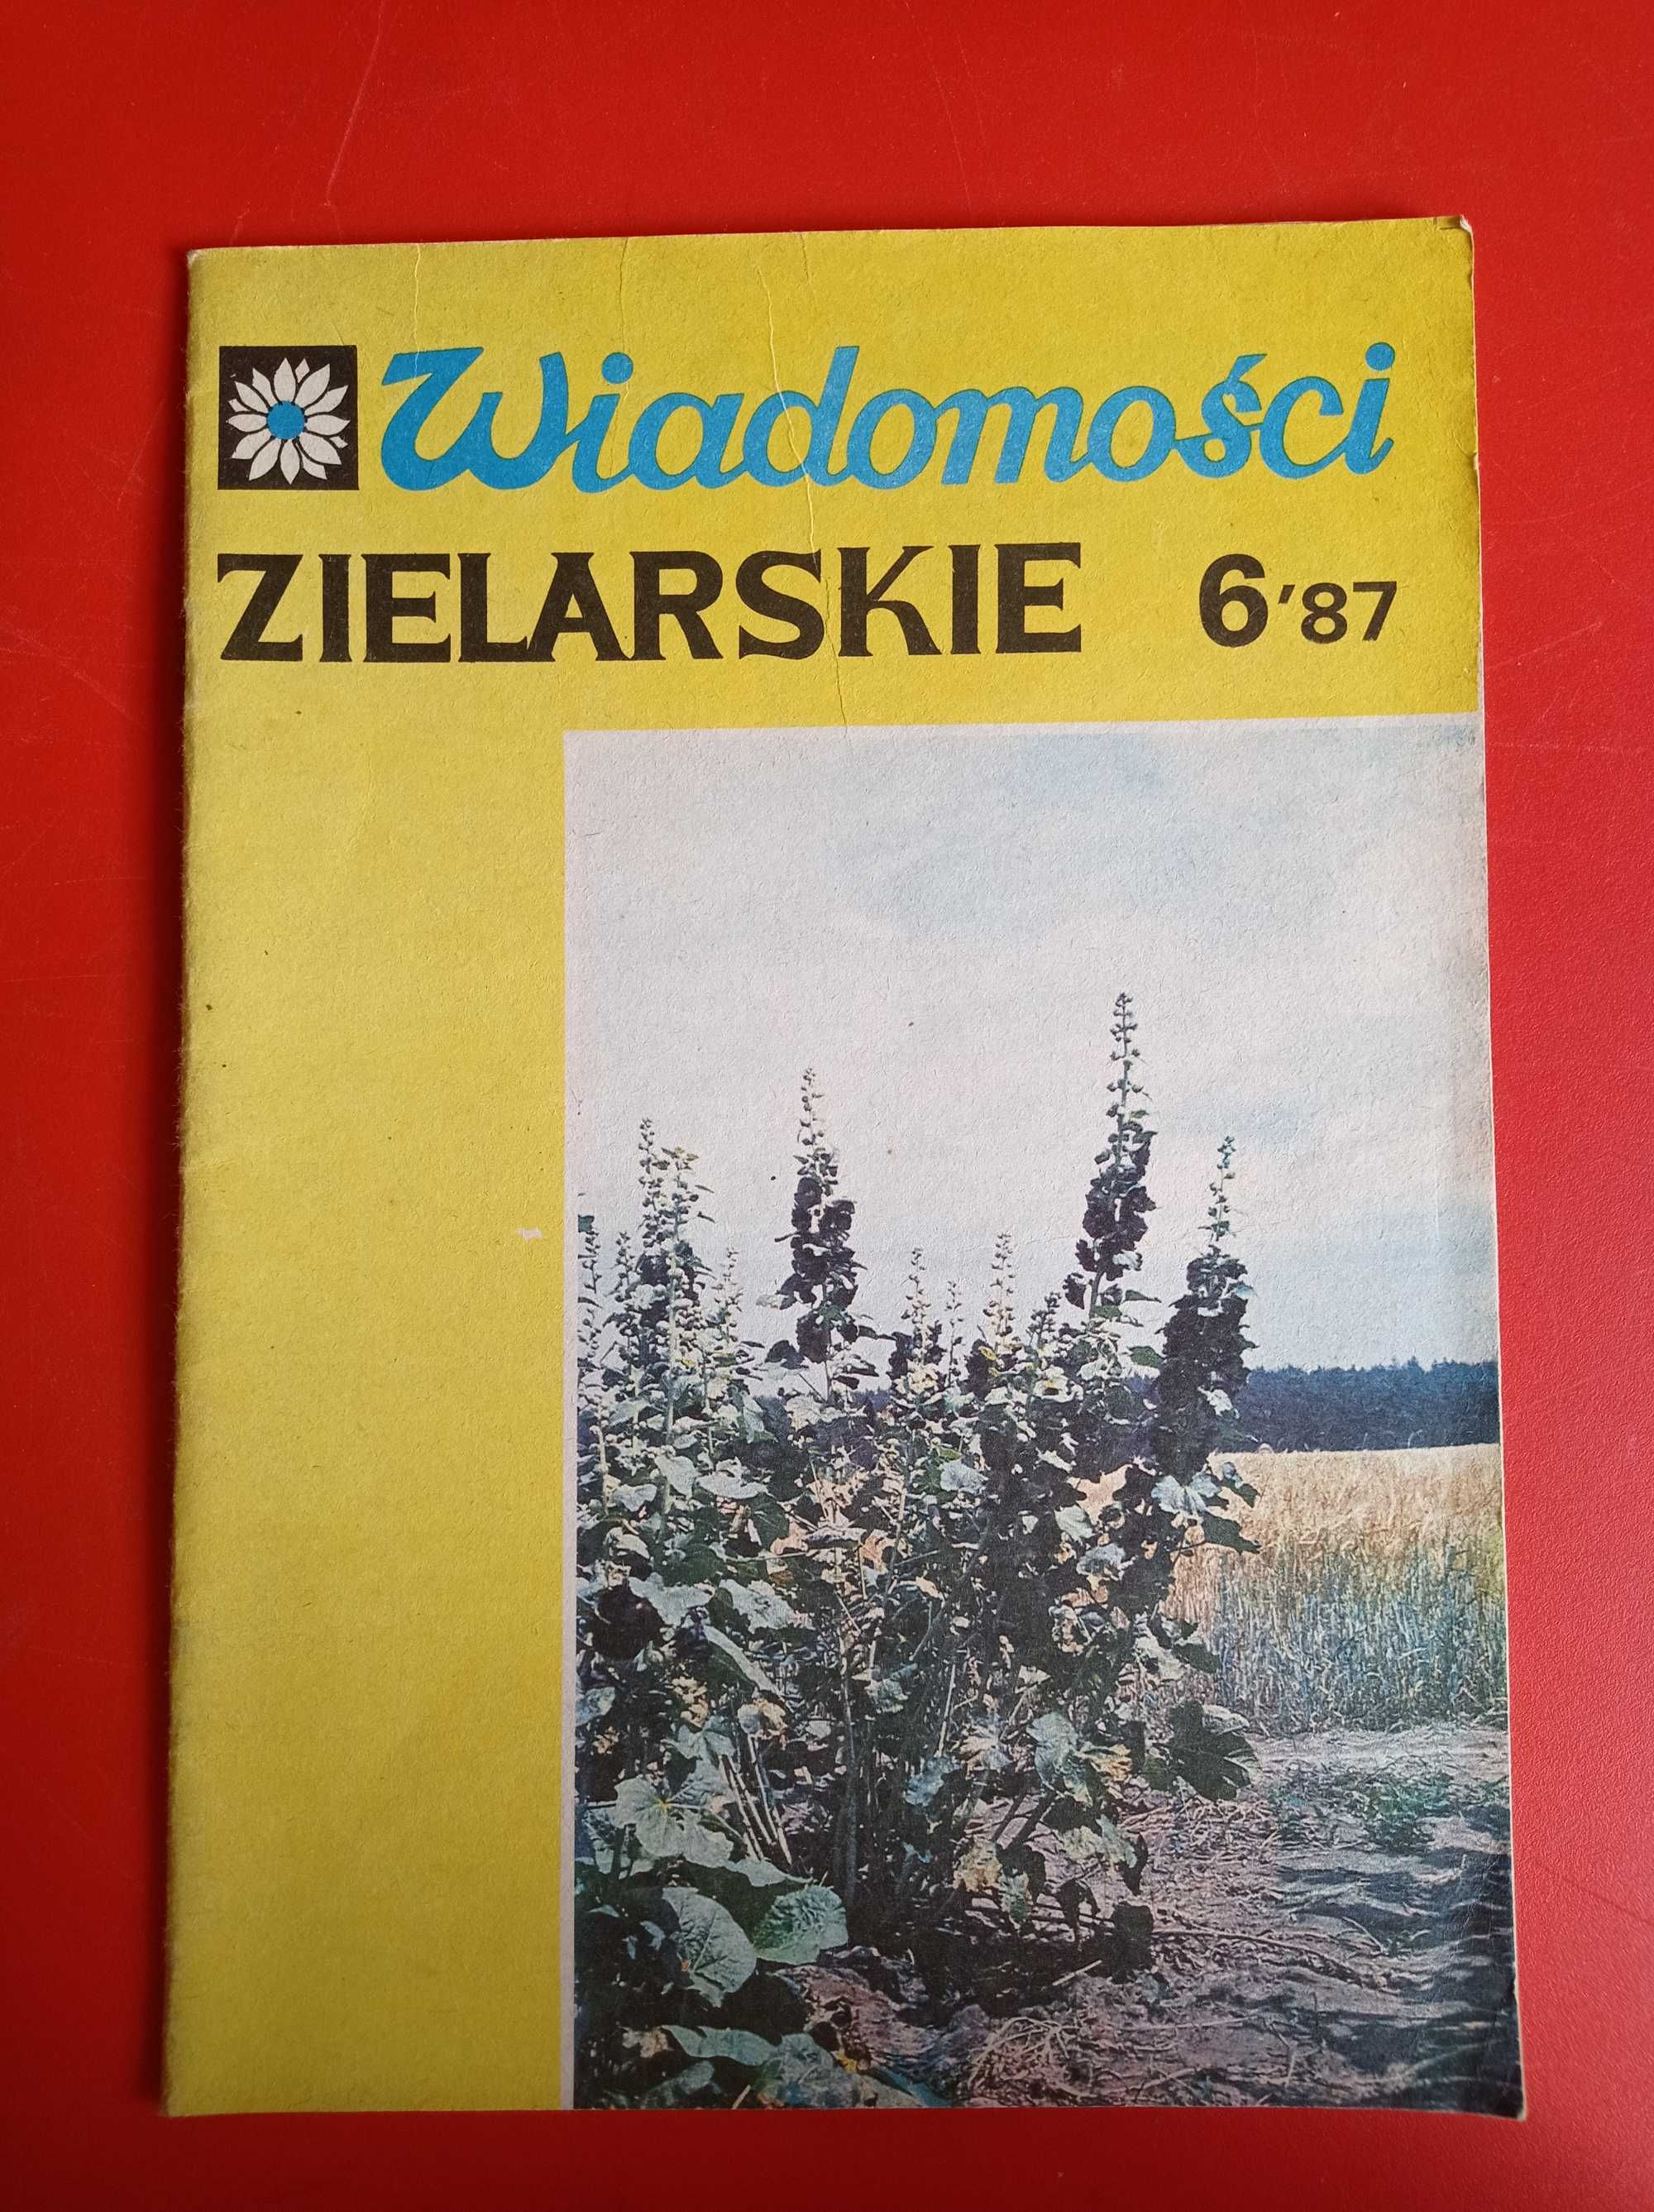 Wiadomości zielarskie nr 6/1987, czerwiec 1987